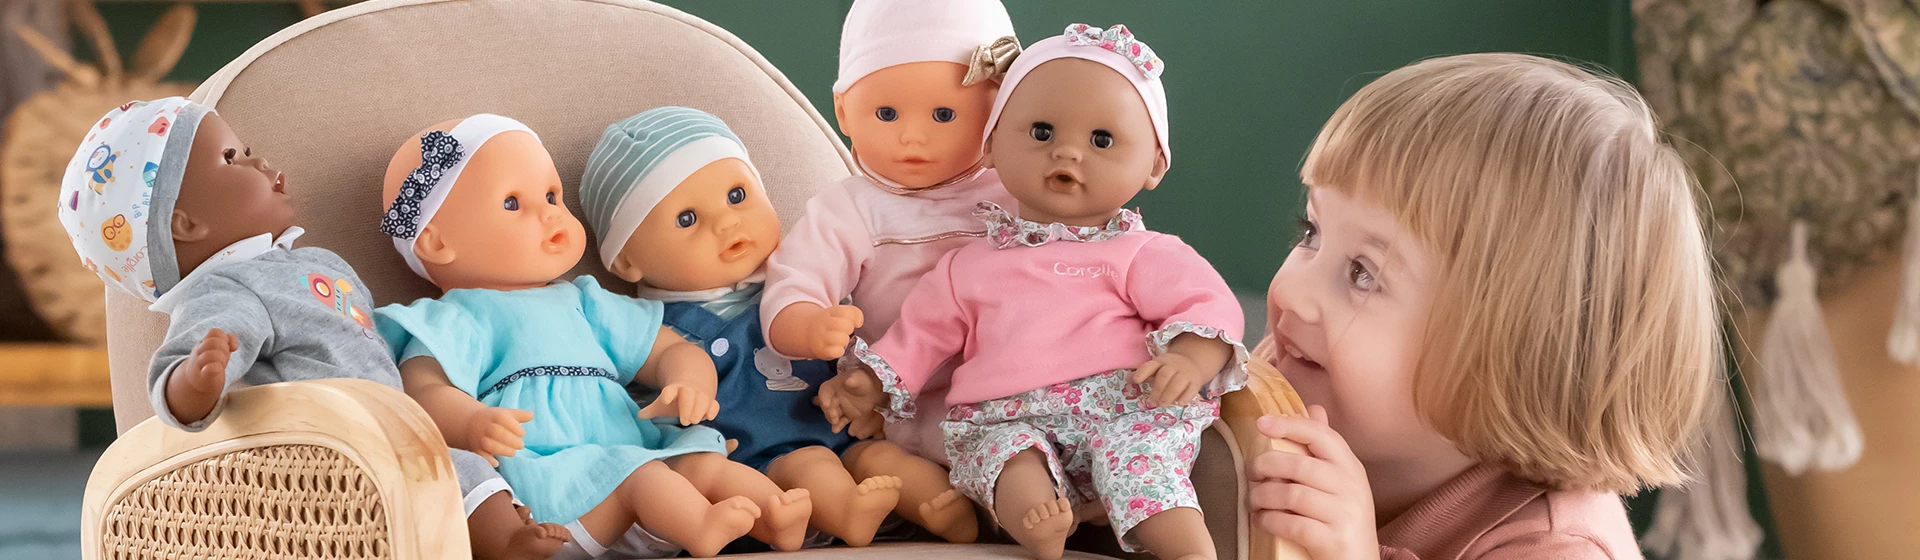 Sélection de poupées pour enfant de 4 ans - JouéClub